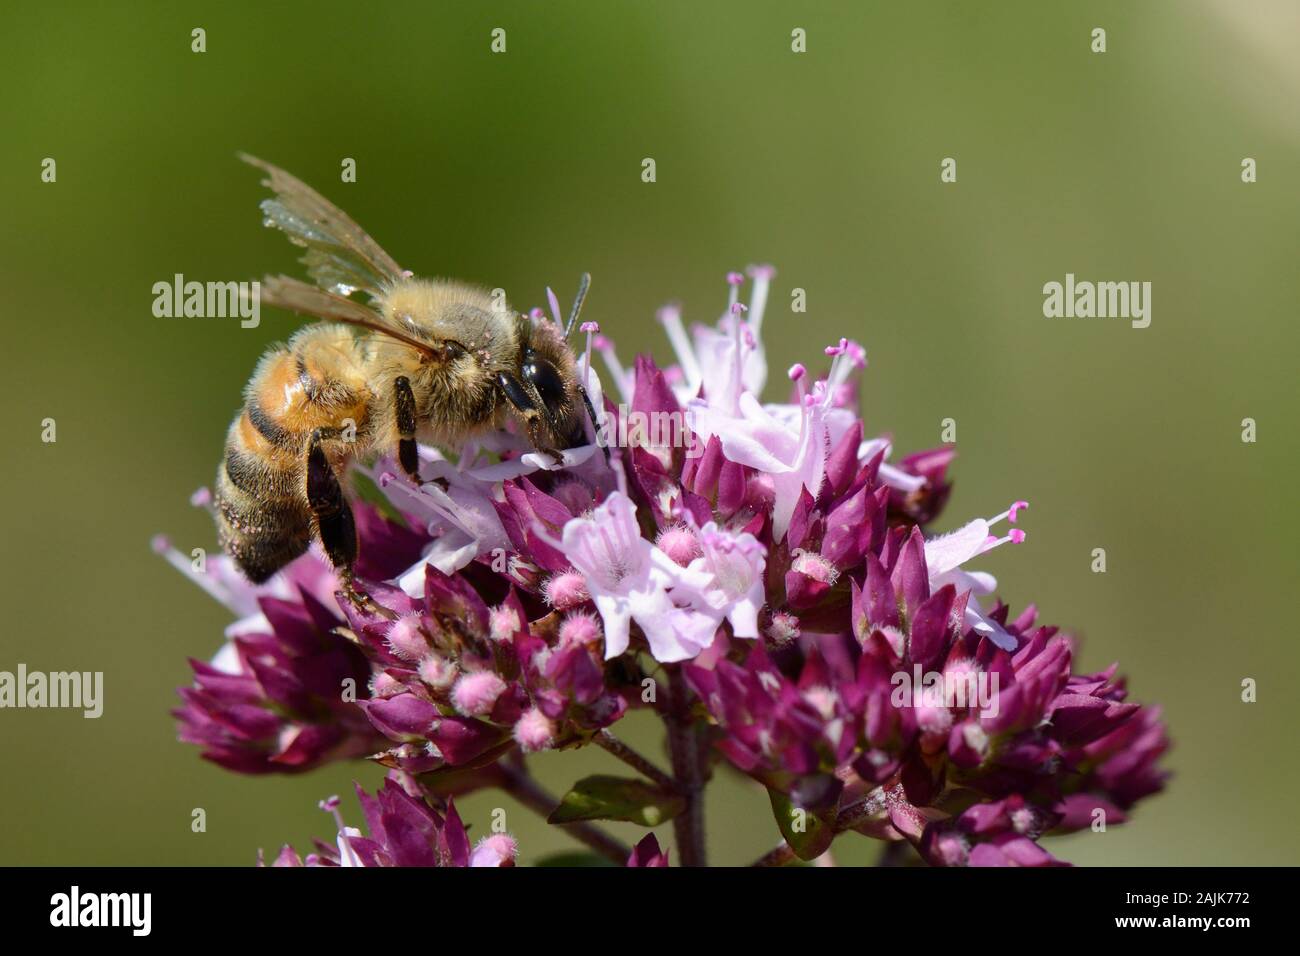 Honigbiene (Apis mellifera) mit sehr abgenutzt Flügel nectaring auf einem wilden Majoran (Origanum vulgare) flowerhead in einem Kreide Grünland Wiese, Wiltshire, UK, Stockfoto